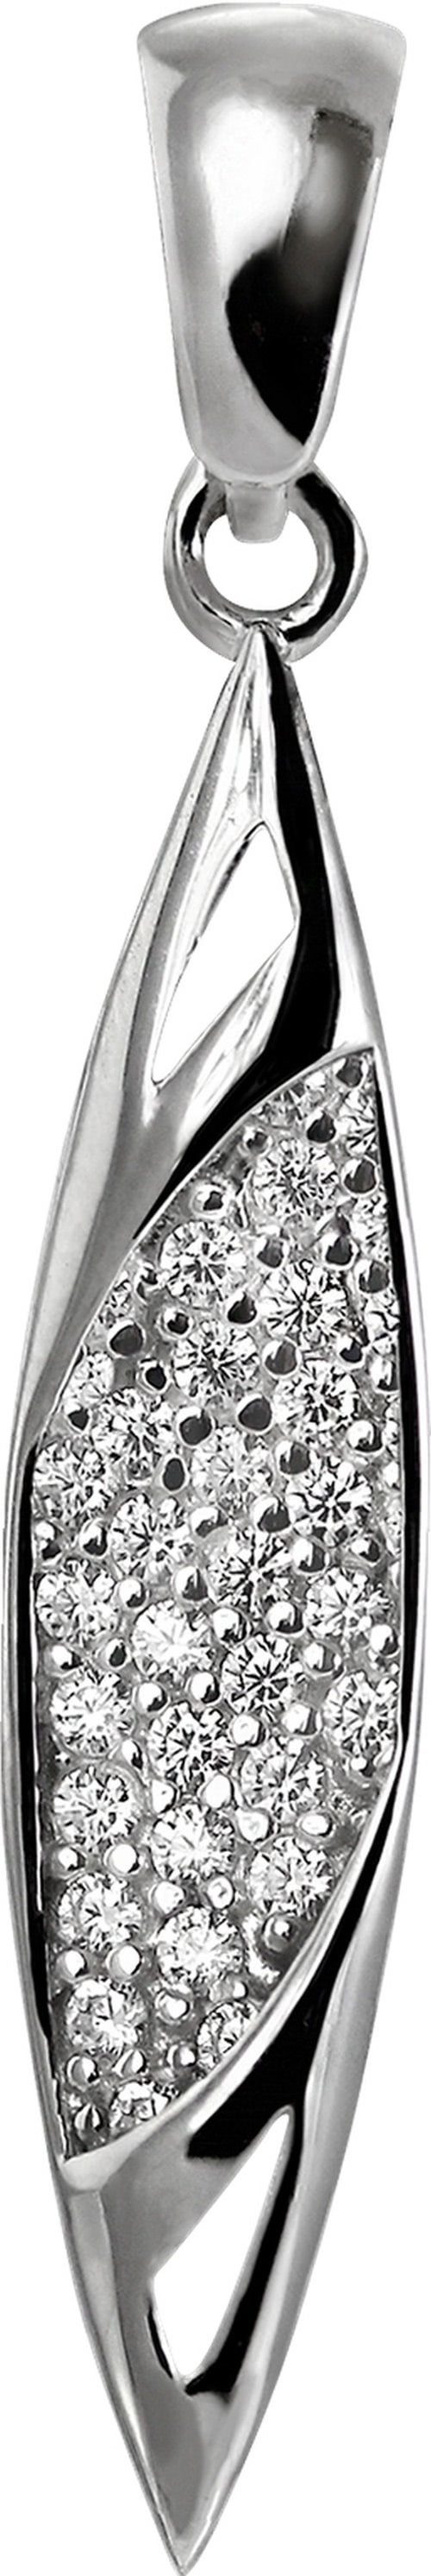 SilberDream Kettenanhänger SilberDream Damen Ship Ketten-Anhänger, Shipanhänger 925 Sterling Silber, silber, weiß